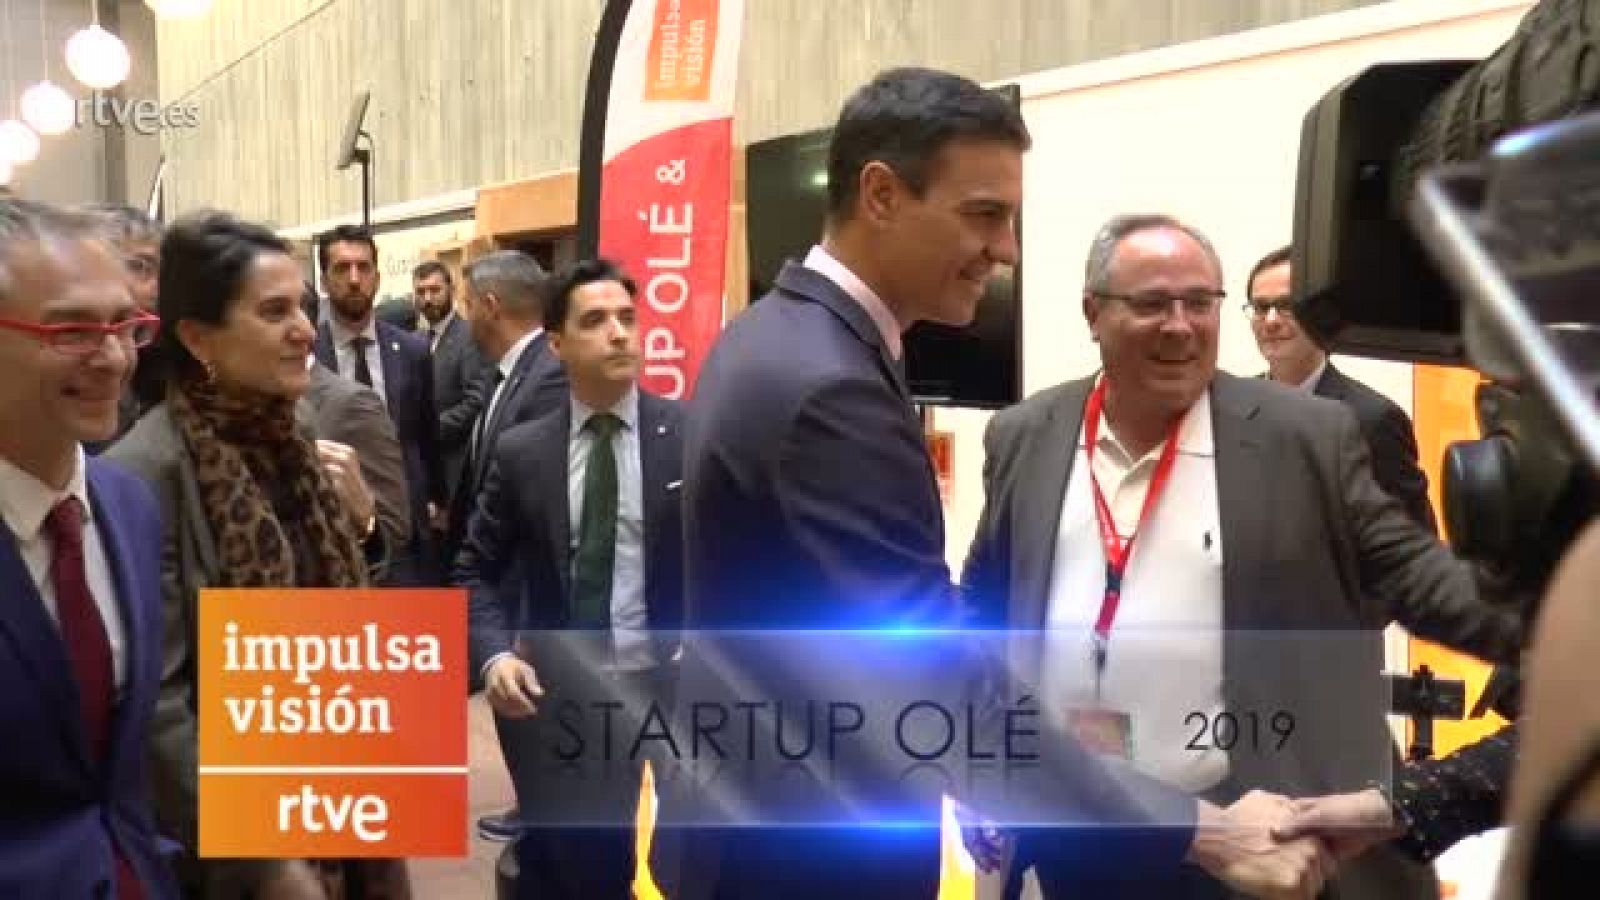 El presidente del gobierno, Pedro Sánchez, visita el estand de Impulsa Visión RTVE en Startup Olé de Salamanca 